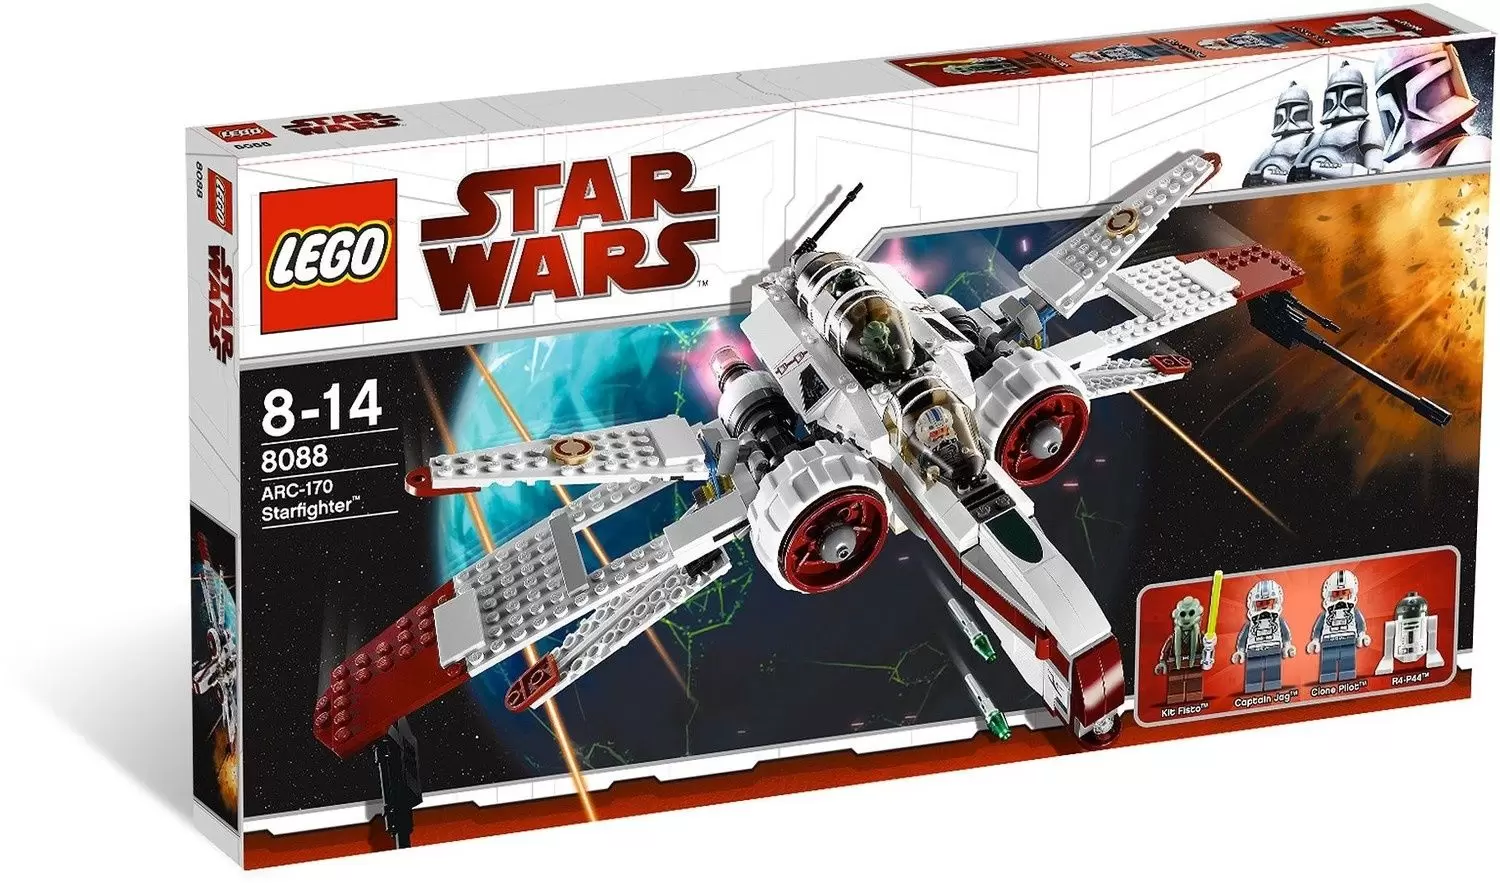 LEGO Star Wars - ARC-170 Starfighter